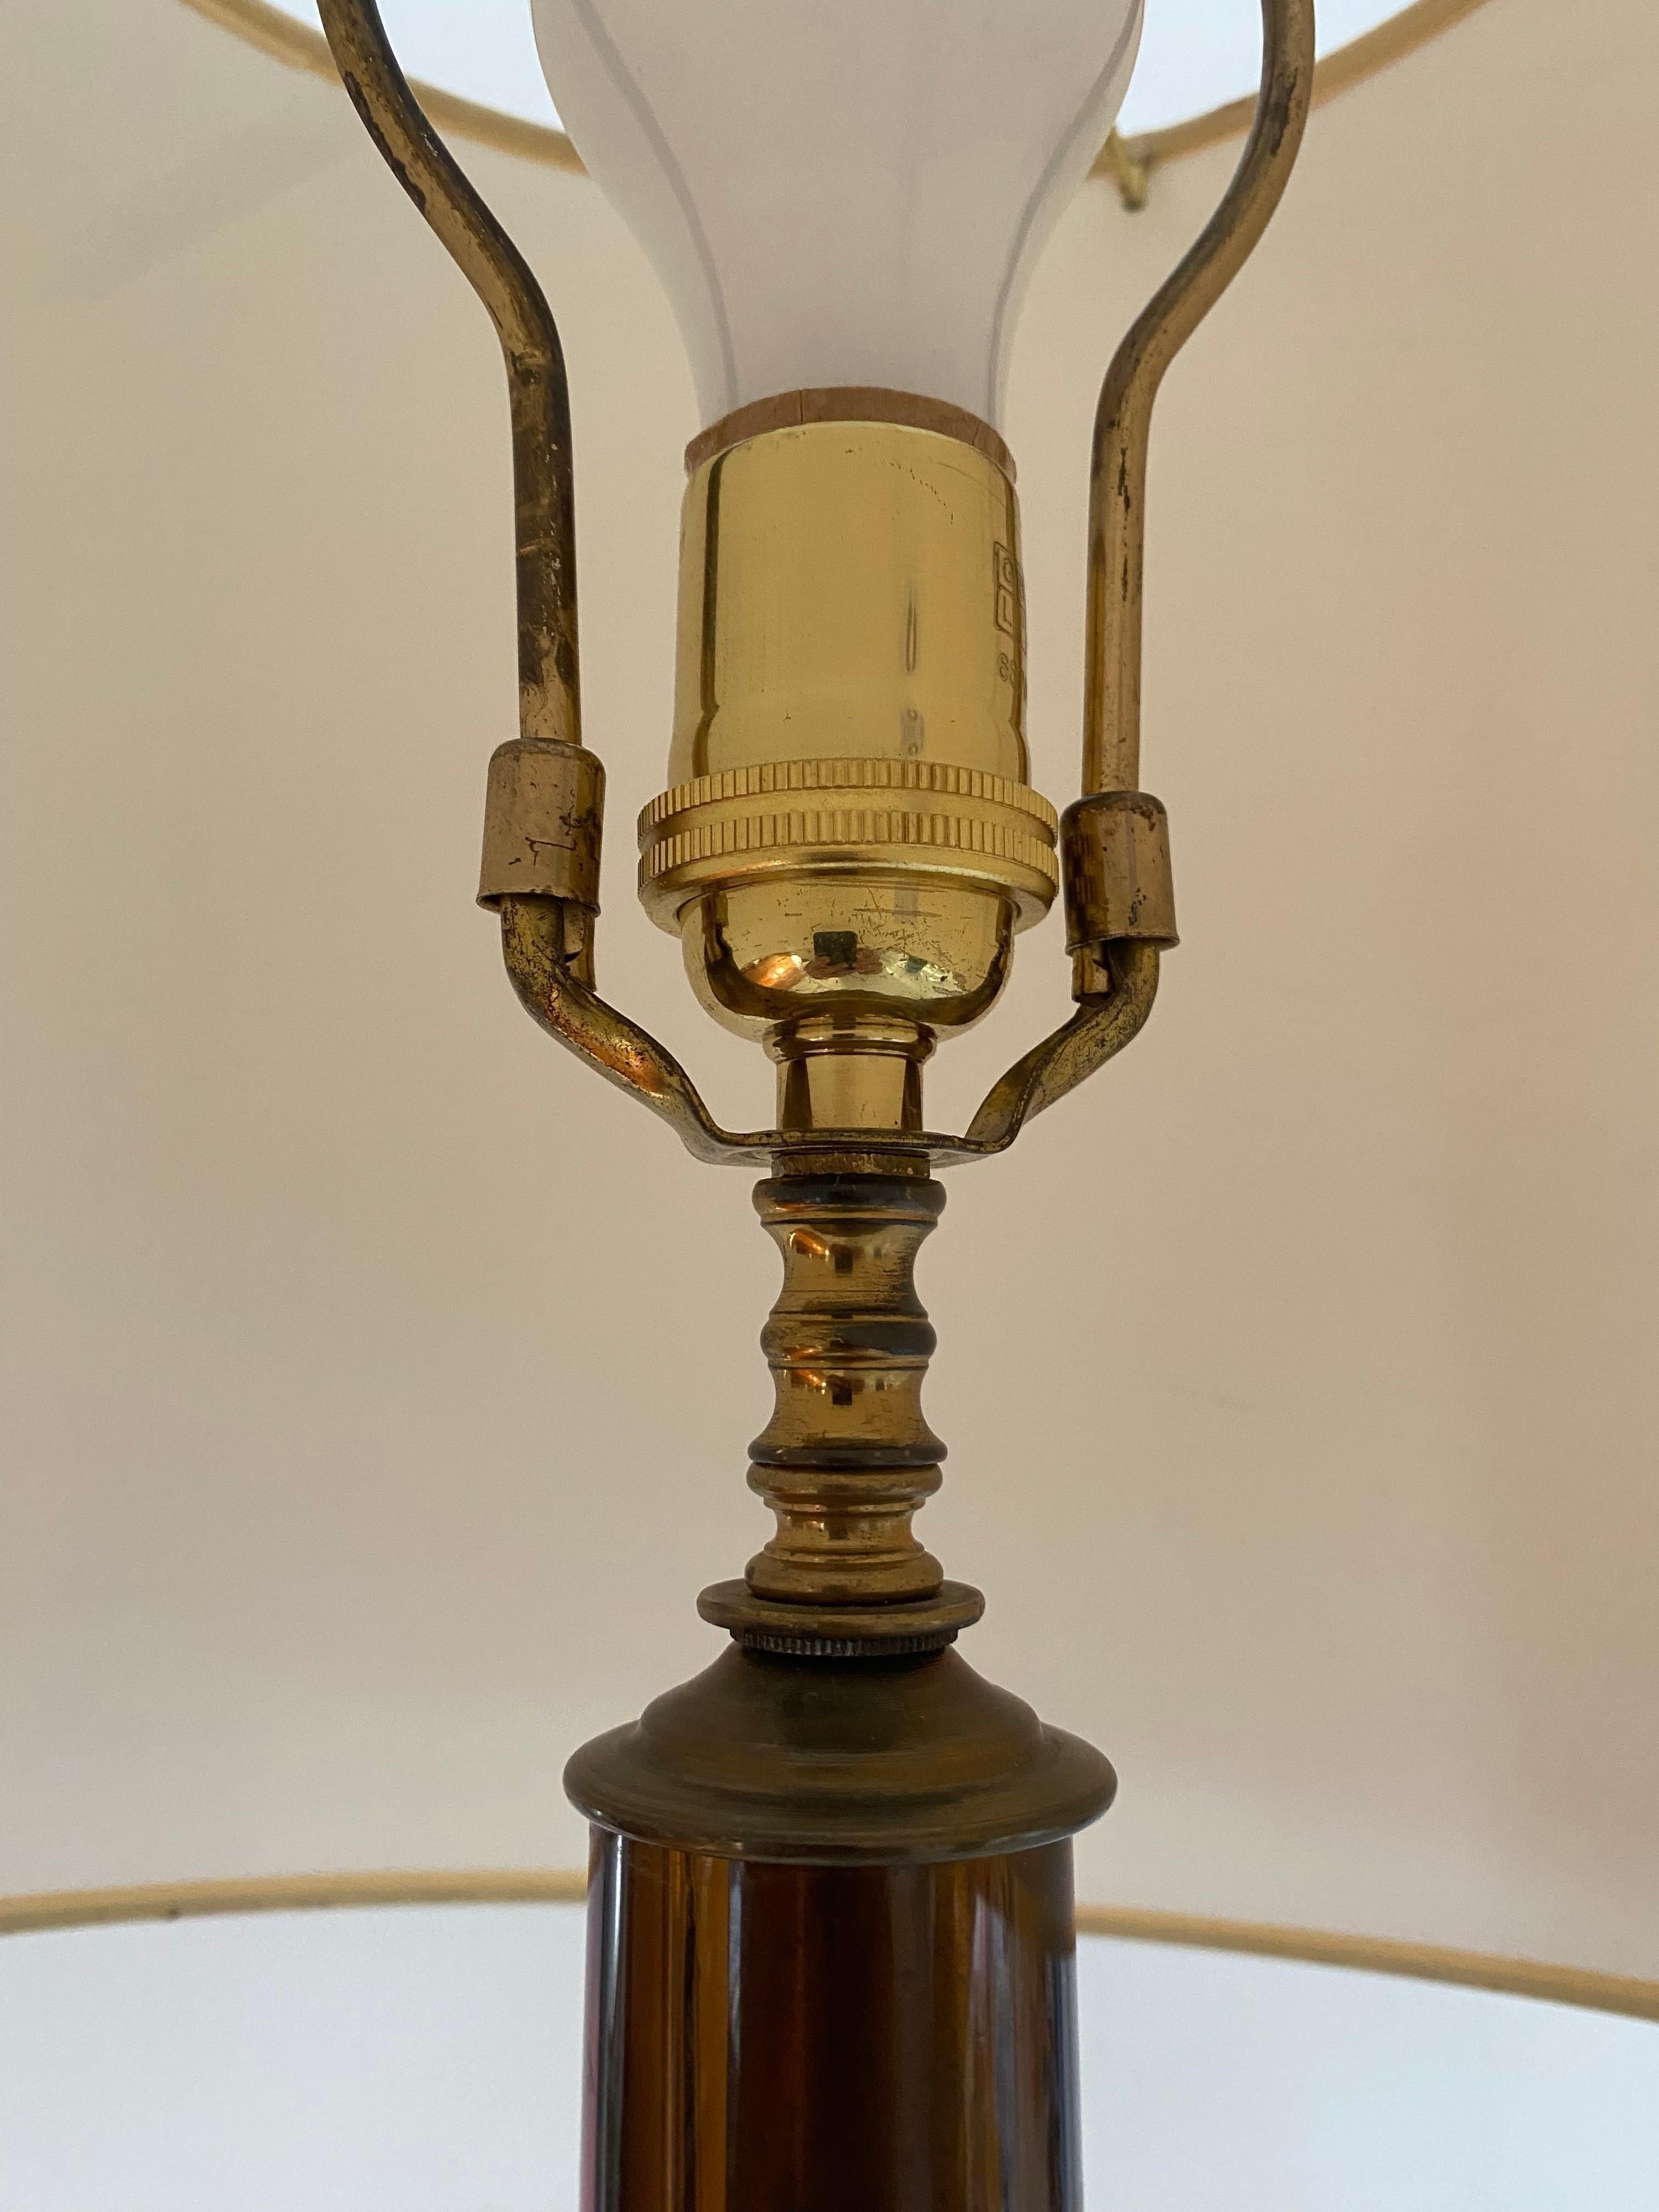 Seltene Form einer doppelten Kürbis-Tischlampe, entworfen von Flavio Poli und hergestellt von Seguso, Murano. Schöne Sommerso-Technik mit gelben - roten - bronzenen Glasschichten.

Klassische Tischleuchte für Übergangsinterieurs.

